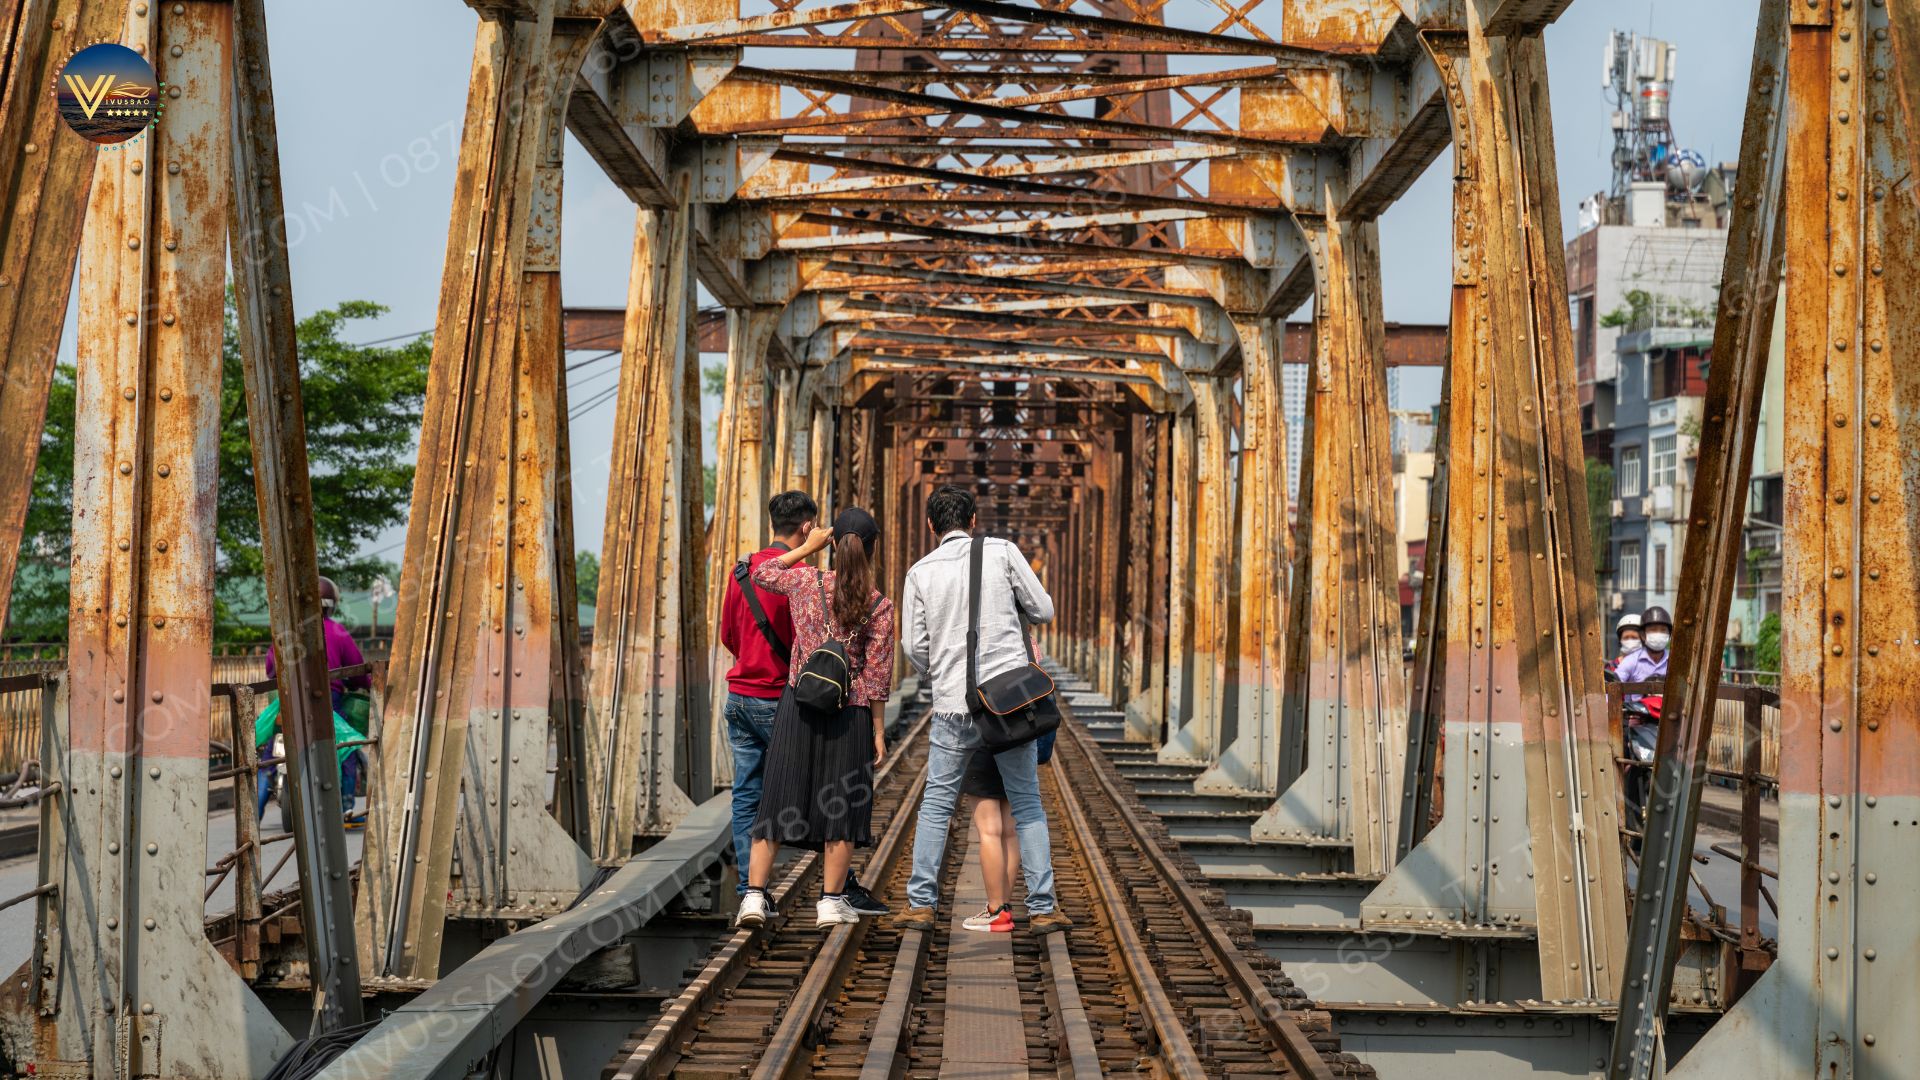 Cầu Long Biên - Kỳ quan kiến trúc và “Chứng nhân lịch sử” của Việt Nam 2023